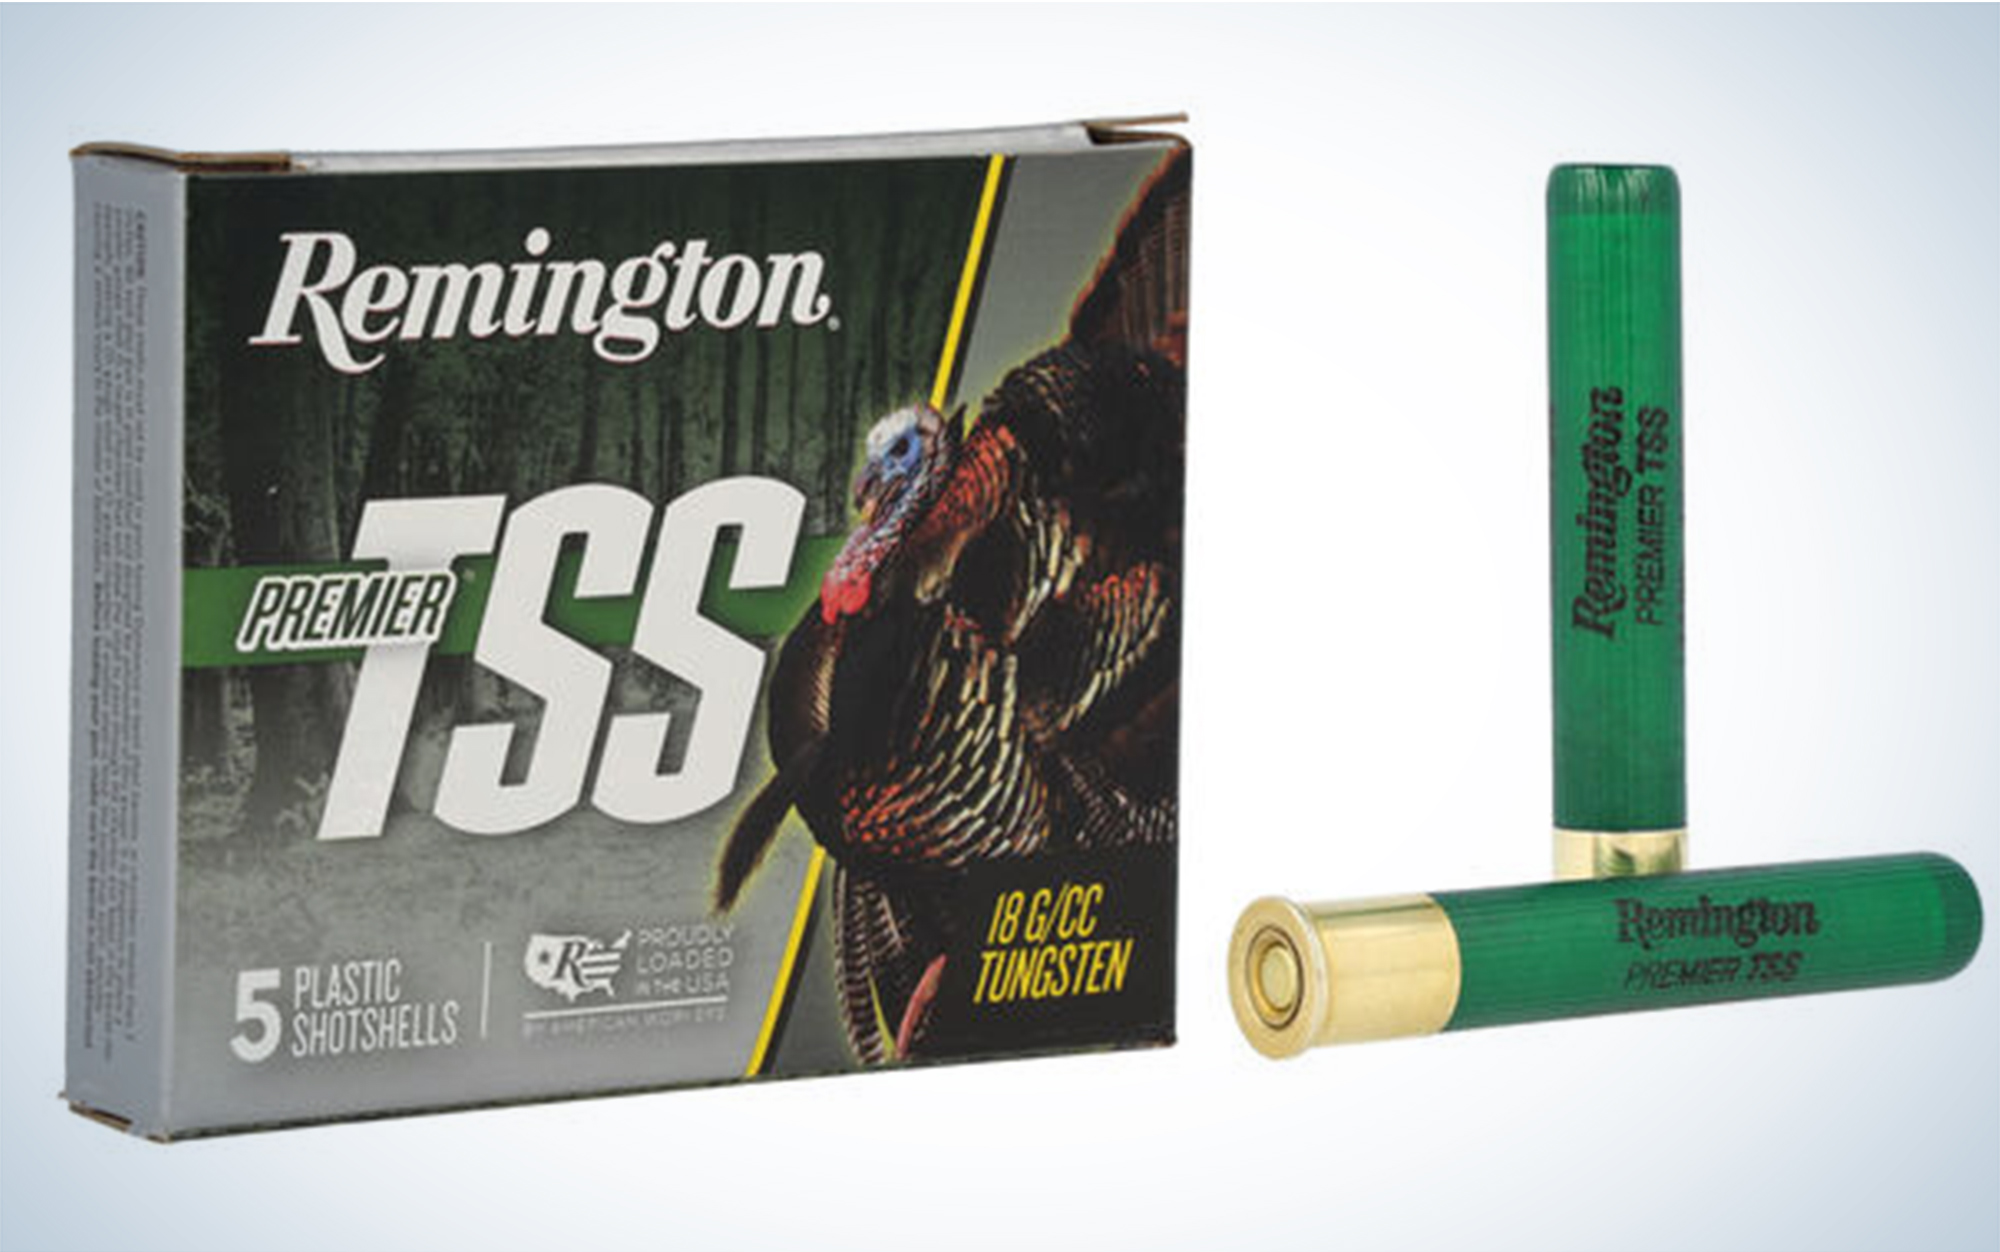 Remington Premier TSS